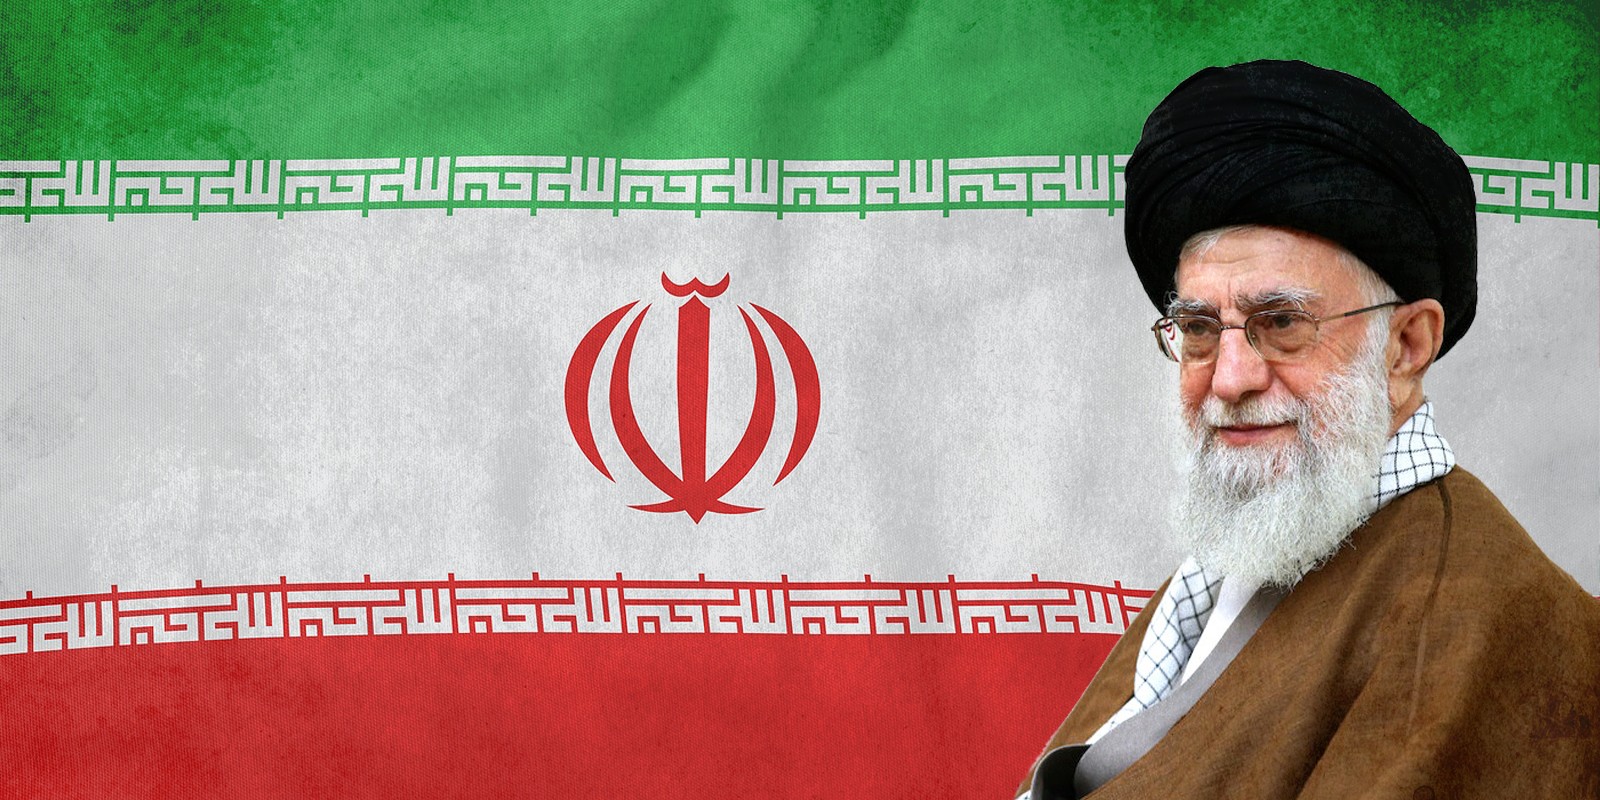 עלי קמנאי, ודגל איראן ברקע